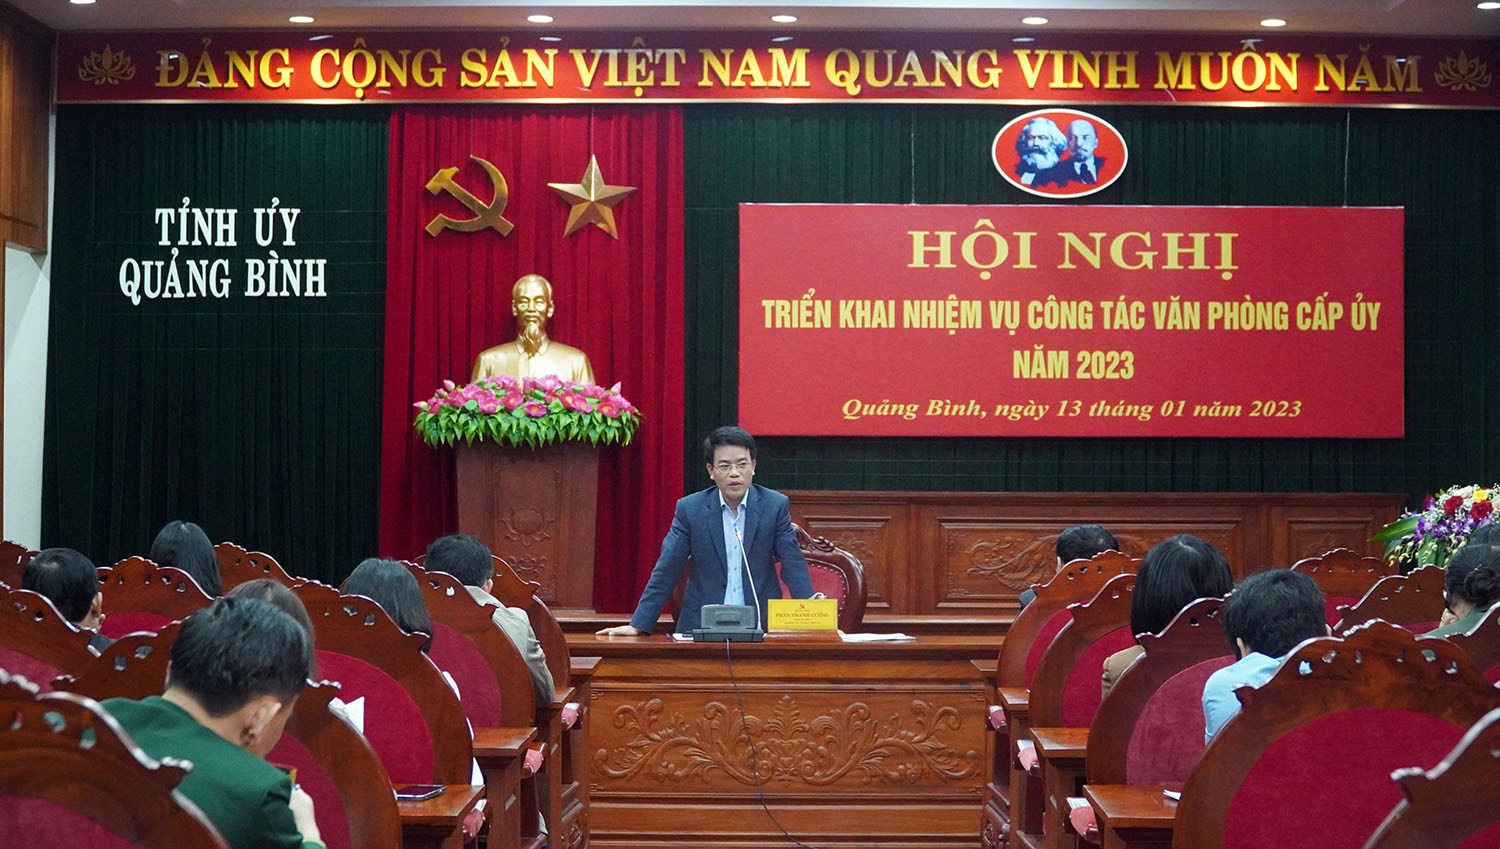 Đồng chí Phan Thanh Cường, Tỉnh ủy viên, Chánh văn phòng Tỉnh ủy phát biểu tại hội nghị triển khai nhiệm vụ công tác văn phòng cấp ủy năm 2023 (ảnh: Ngọc Mai)